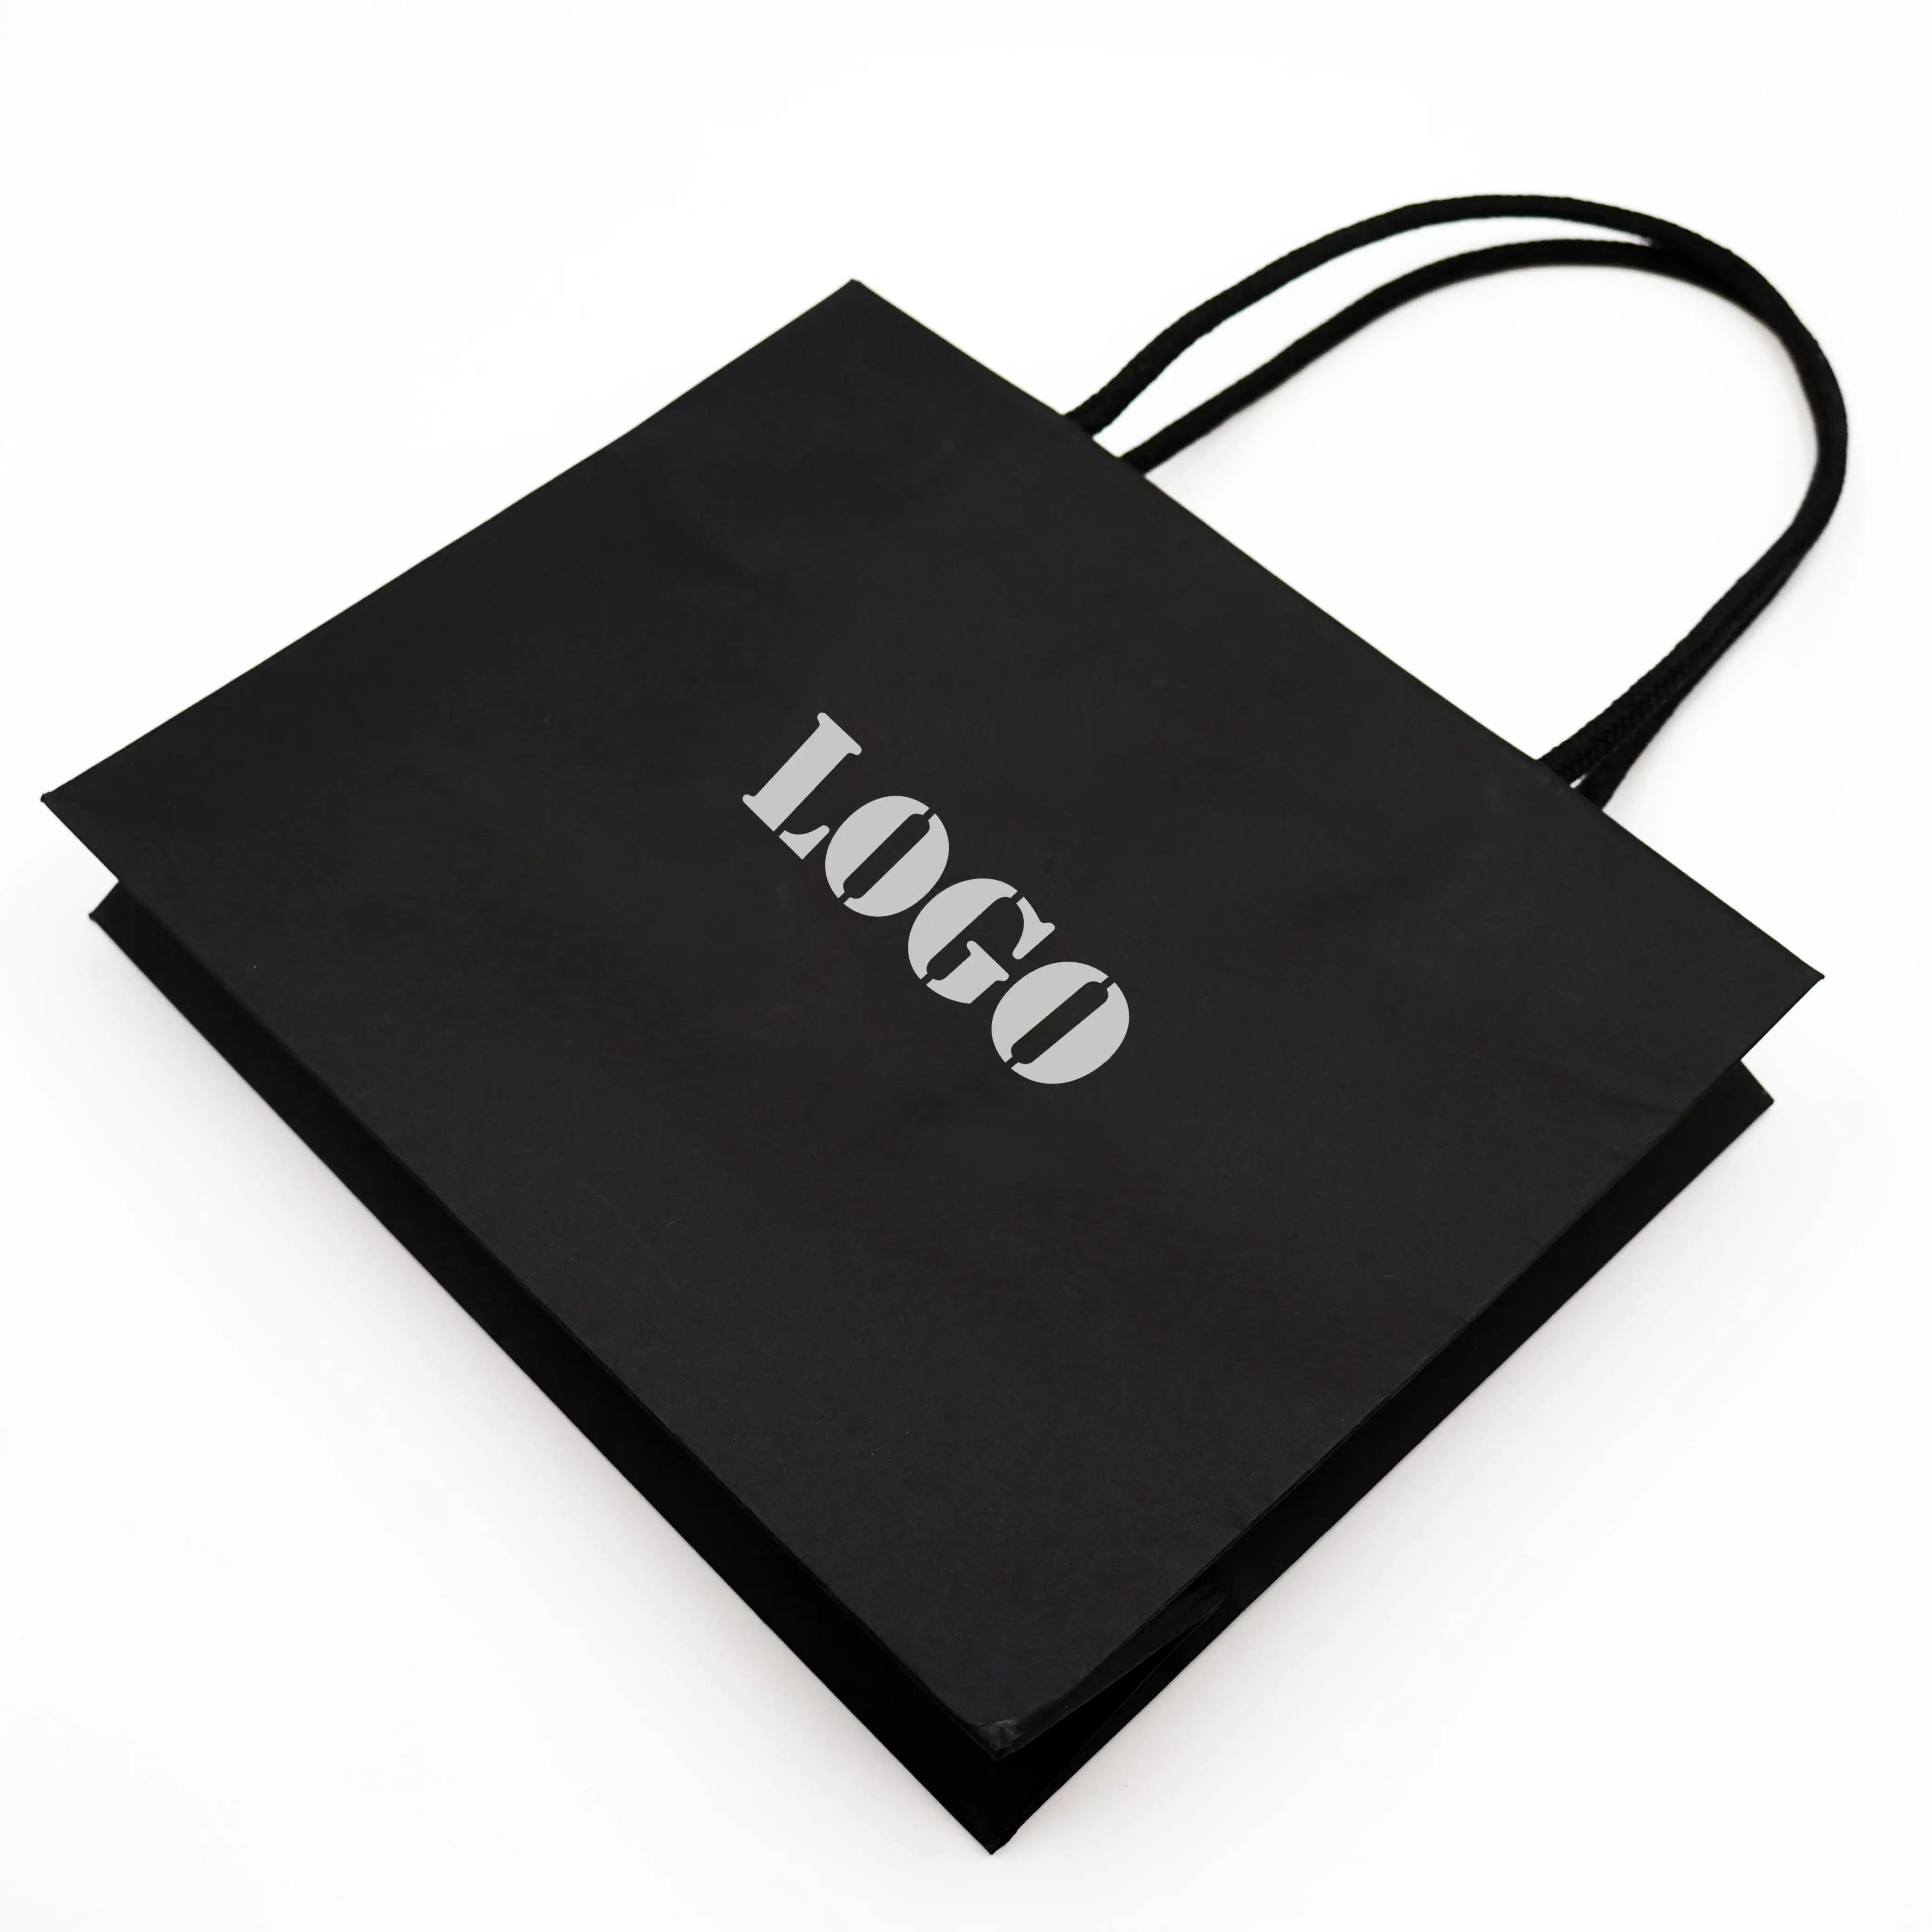 Şerit saplı özel logo tasarım lüks kağıt torba hediye paketleme torbası kağıt alışveriş torbası